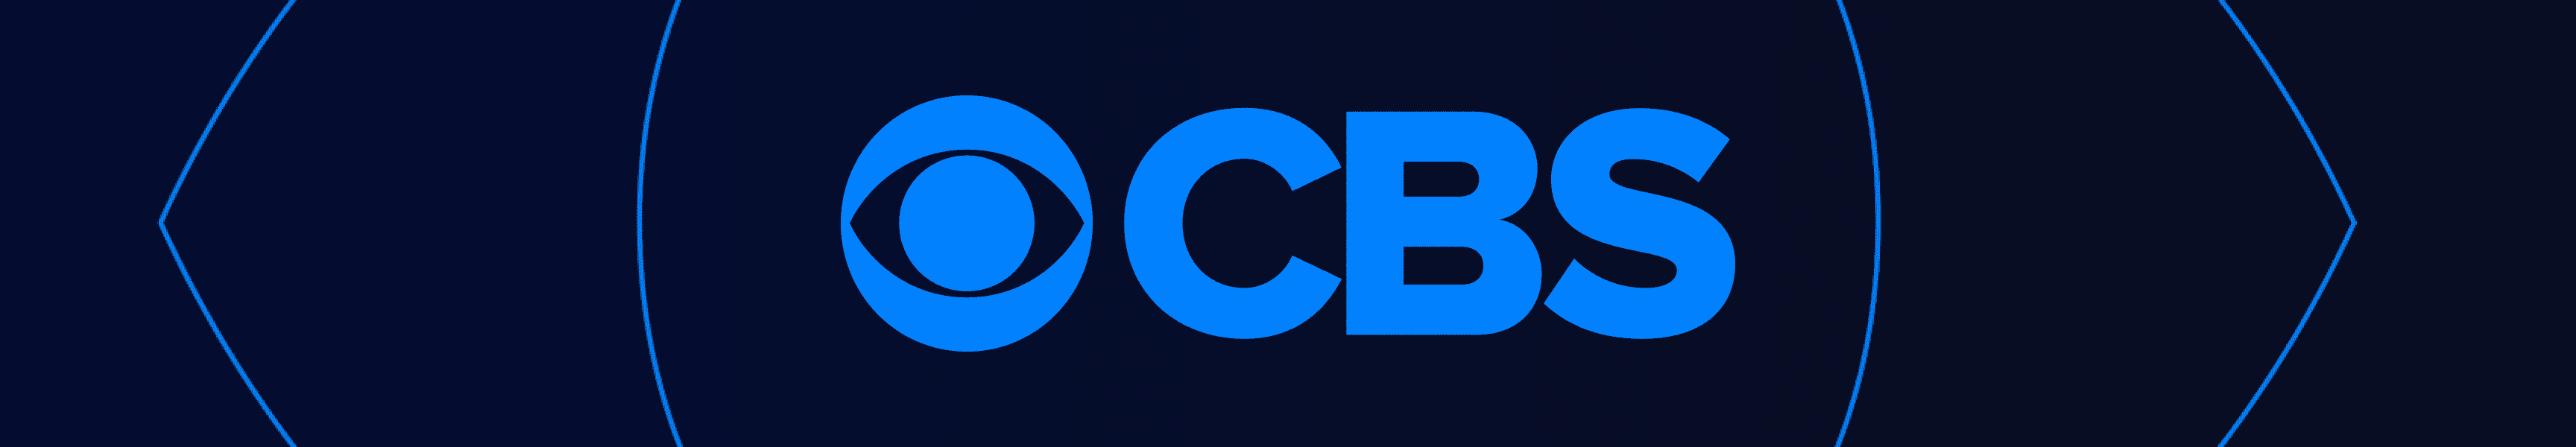 CBS Unterhaltung Wasserflaschen